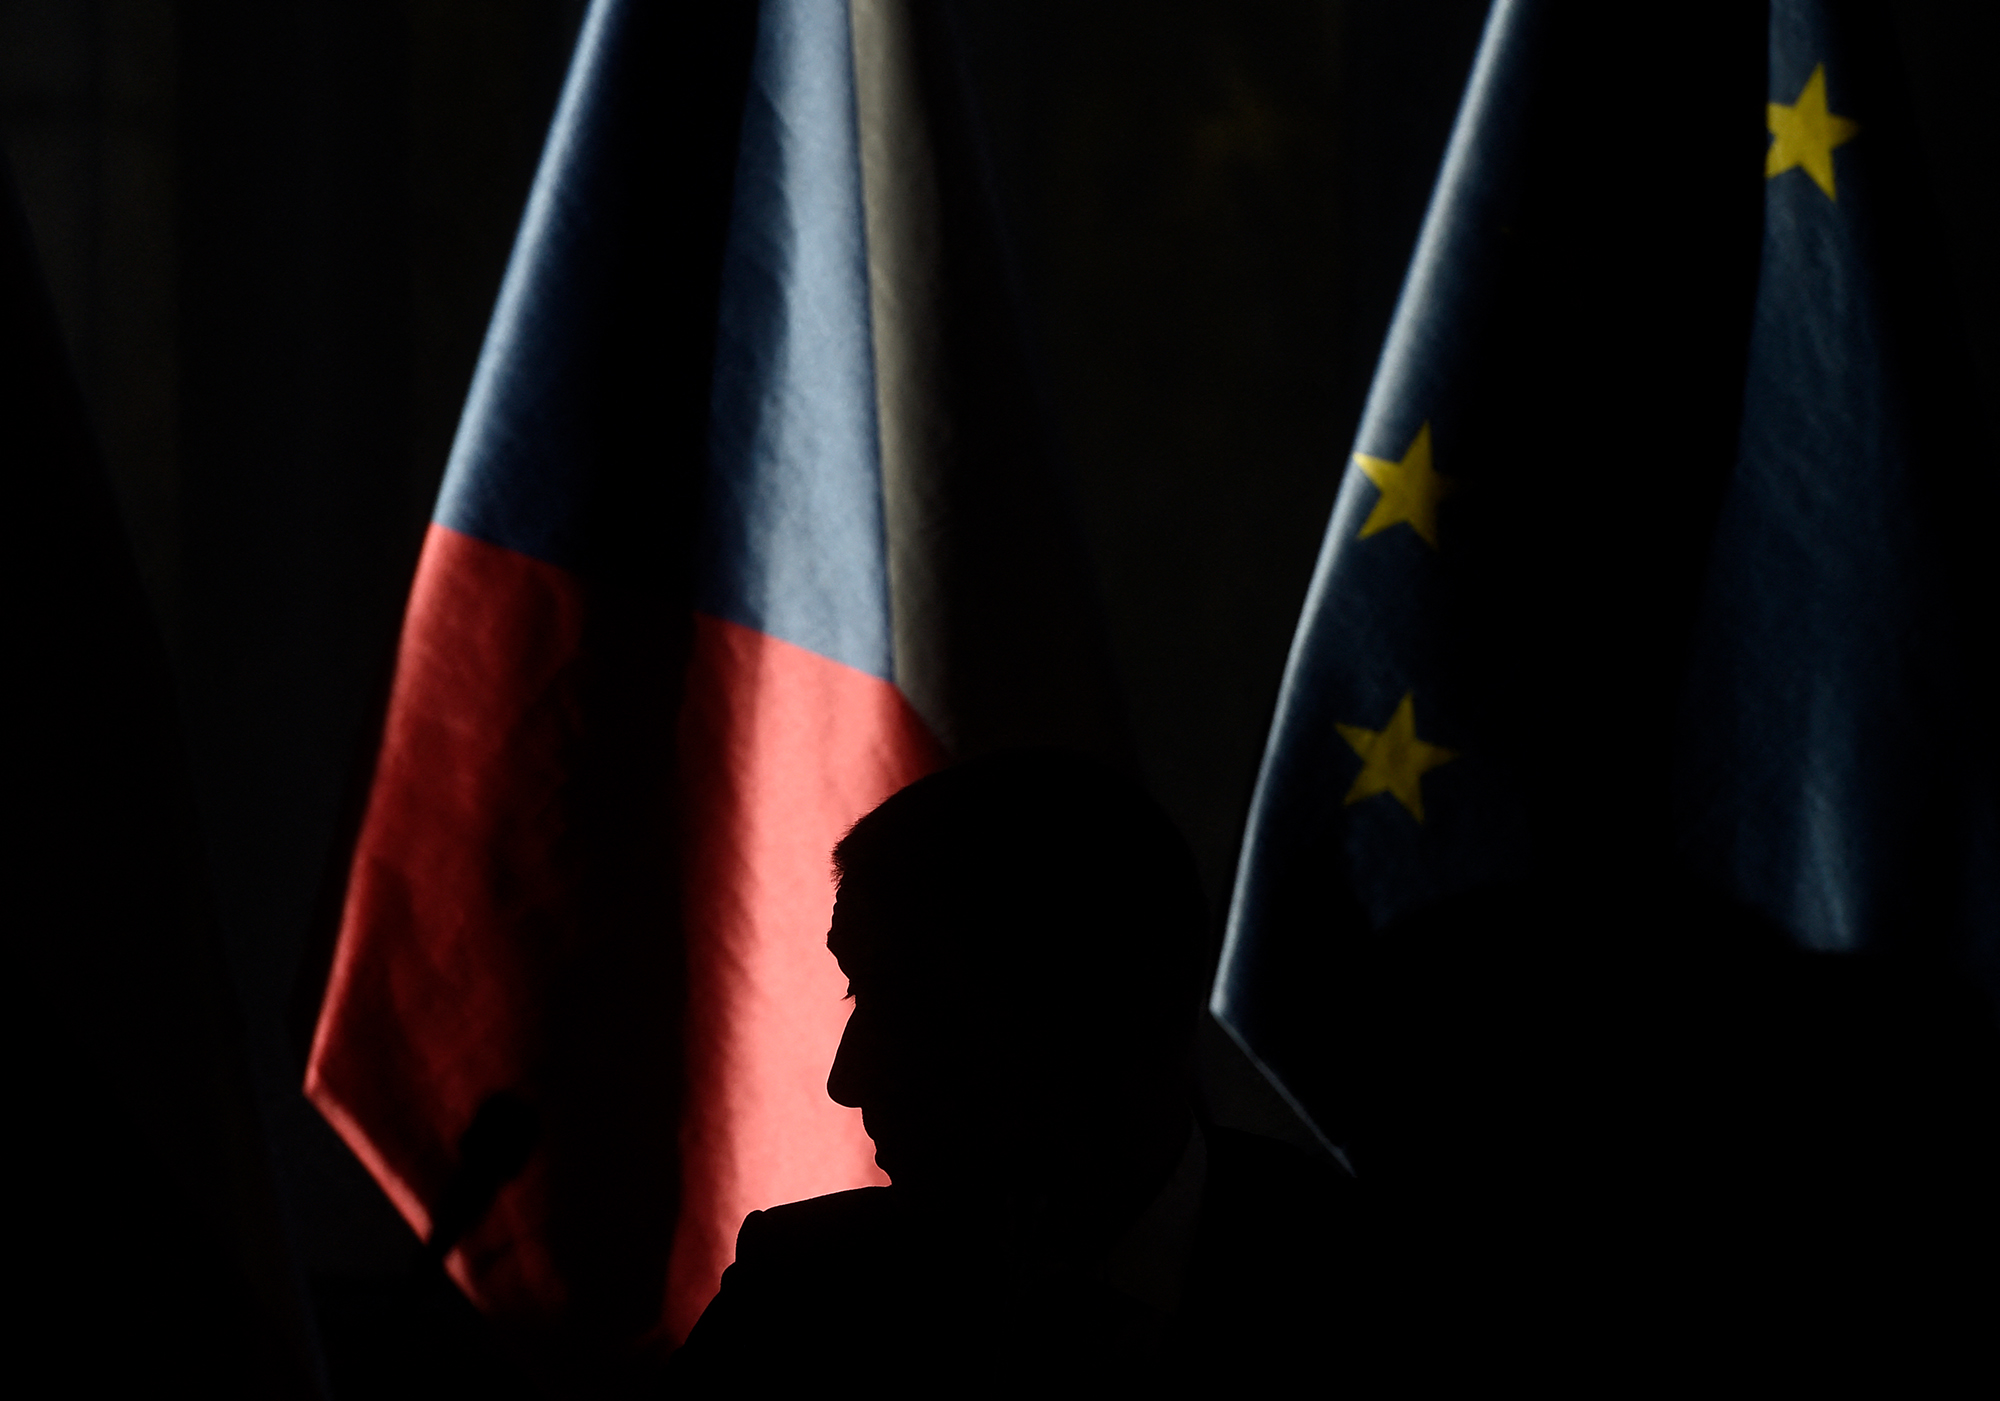 Tschechische Fahne und EU-Flagge (Bild: Michal Cizek/AFP)